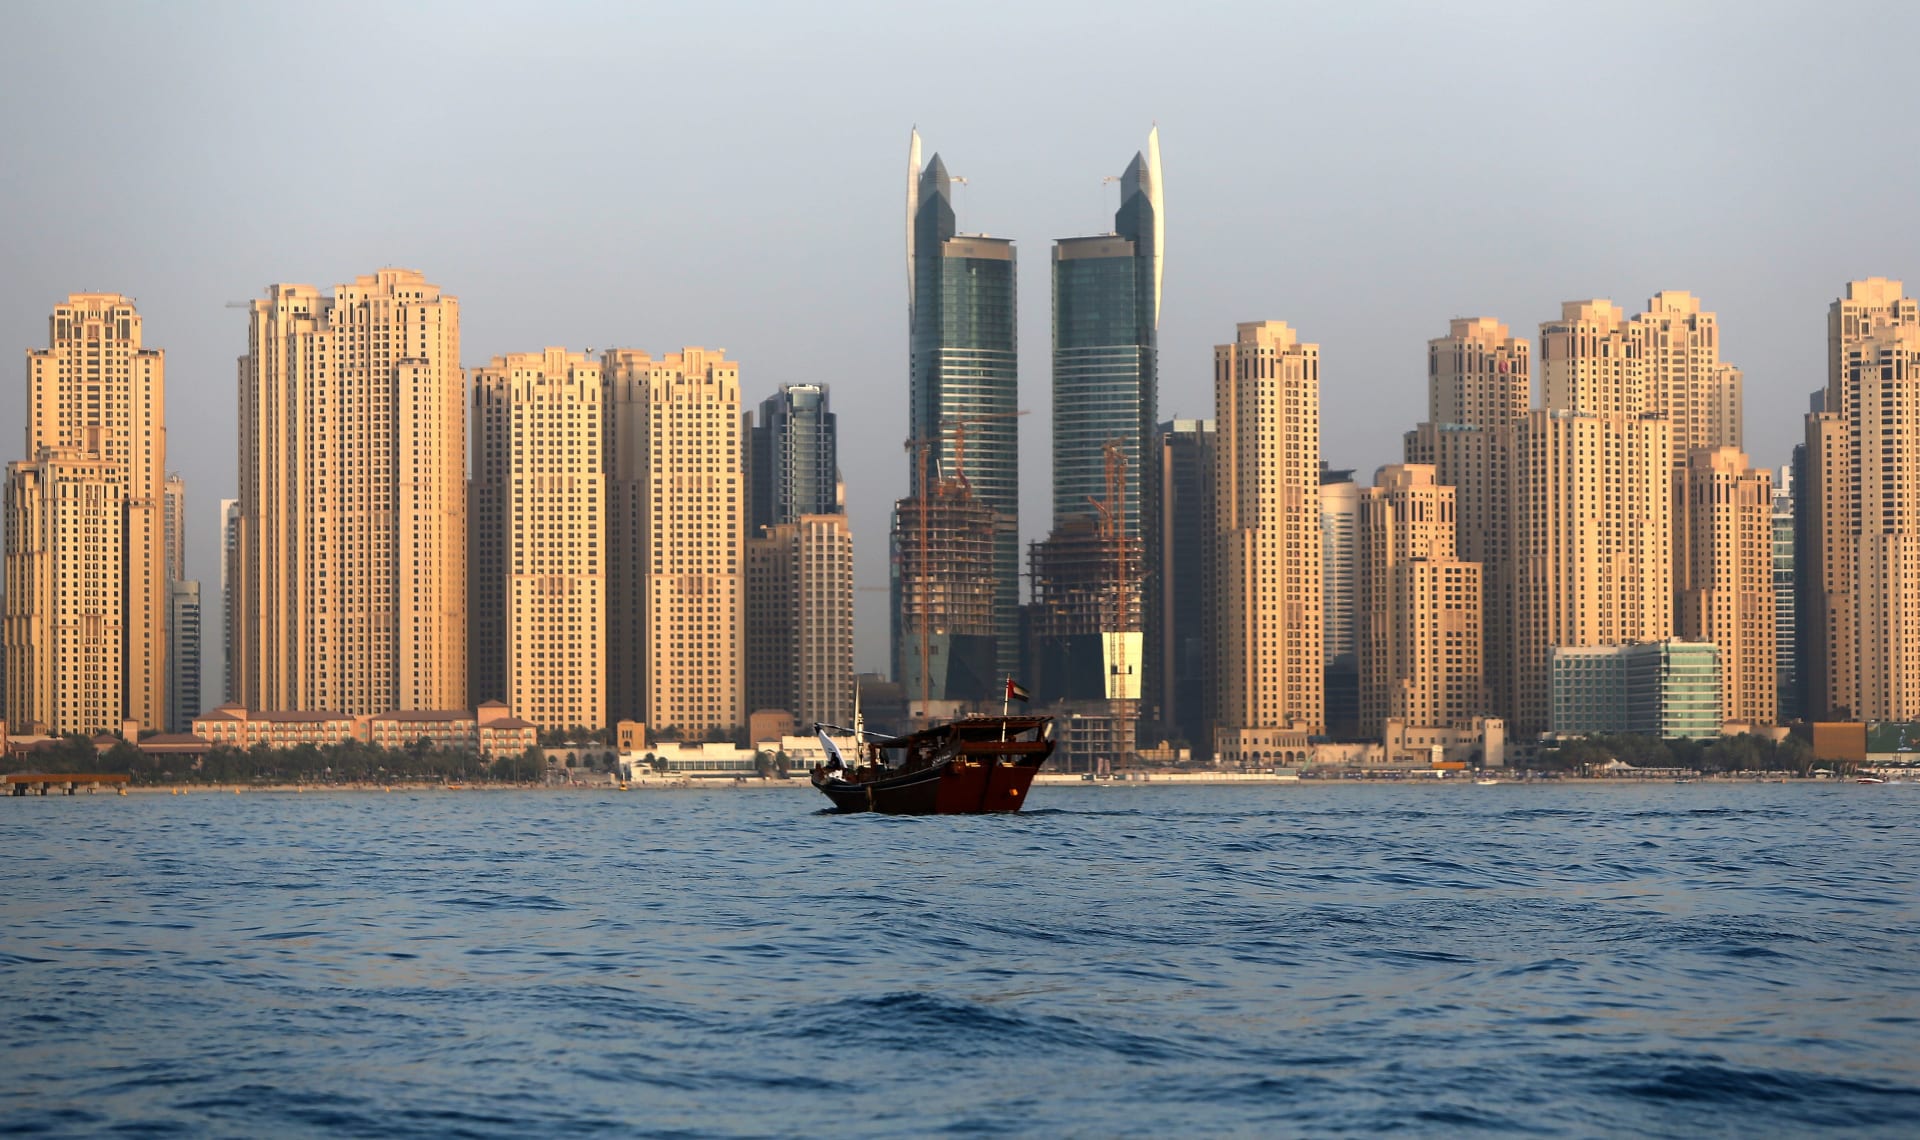 مستشارون عقاريون: أفضل وقت لشراء العقارات في دبي قد حان